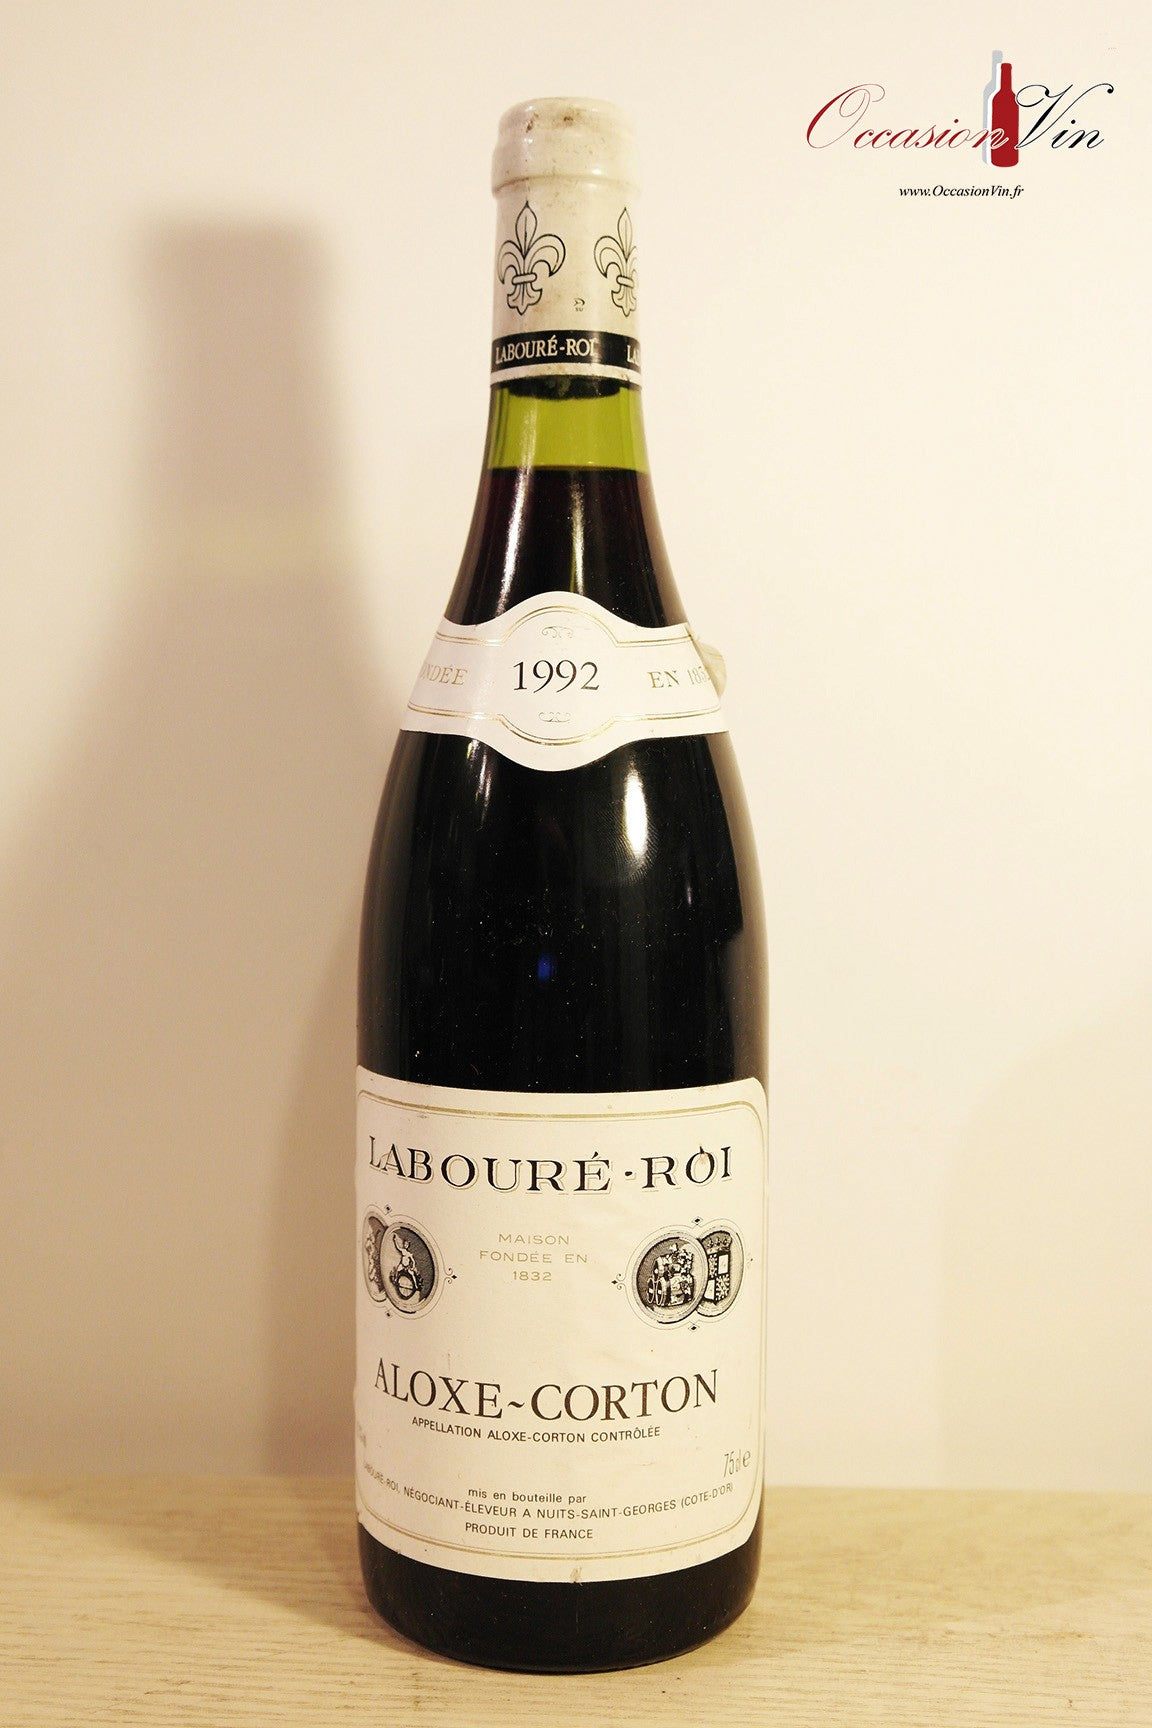 Aloxe-Corton Labouré Roi ELA Vin 1992